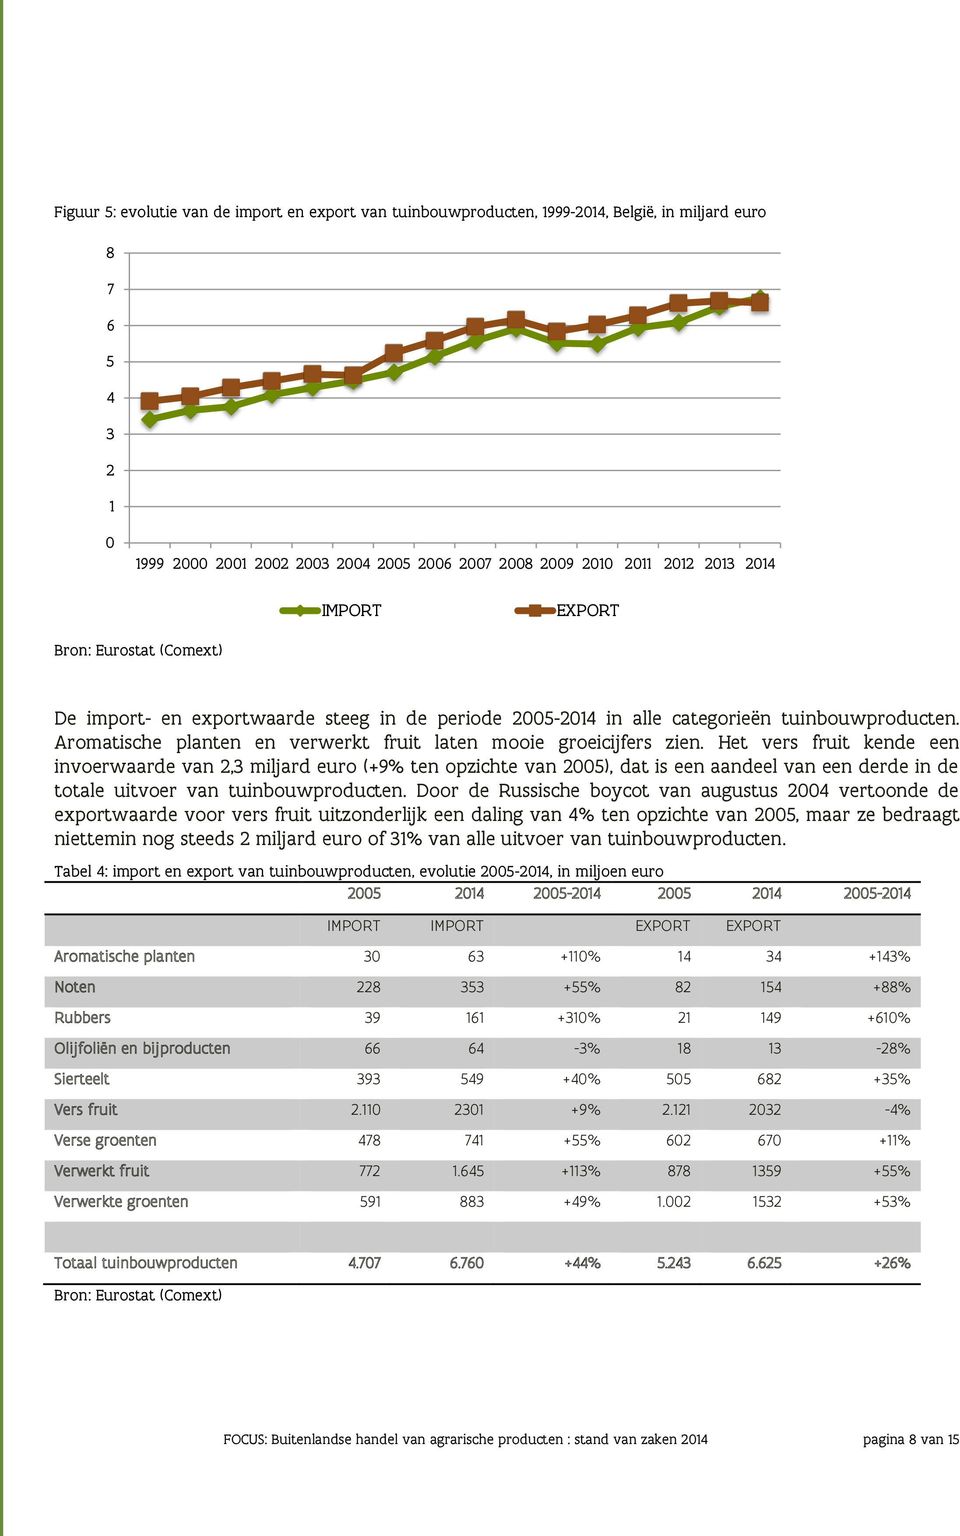 Het vers fruit kende een invoerwaarde van 2,3 miljard euro (+9% ten opzichte van 2005), dat is een aandeel van een derde in de totale uitvoer van tuinbouwproducten.